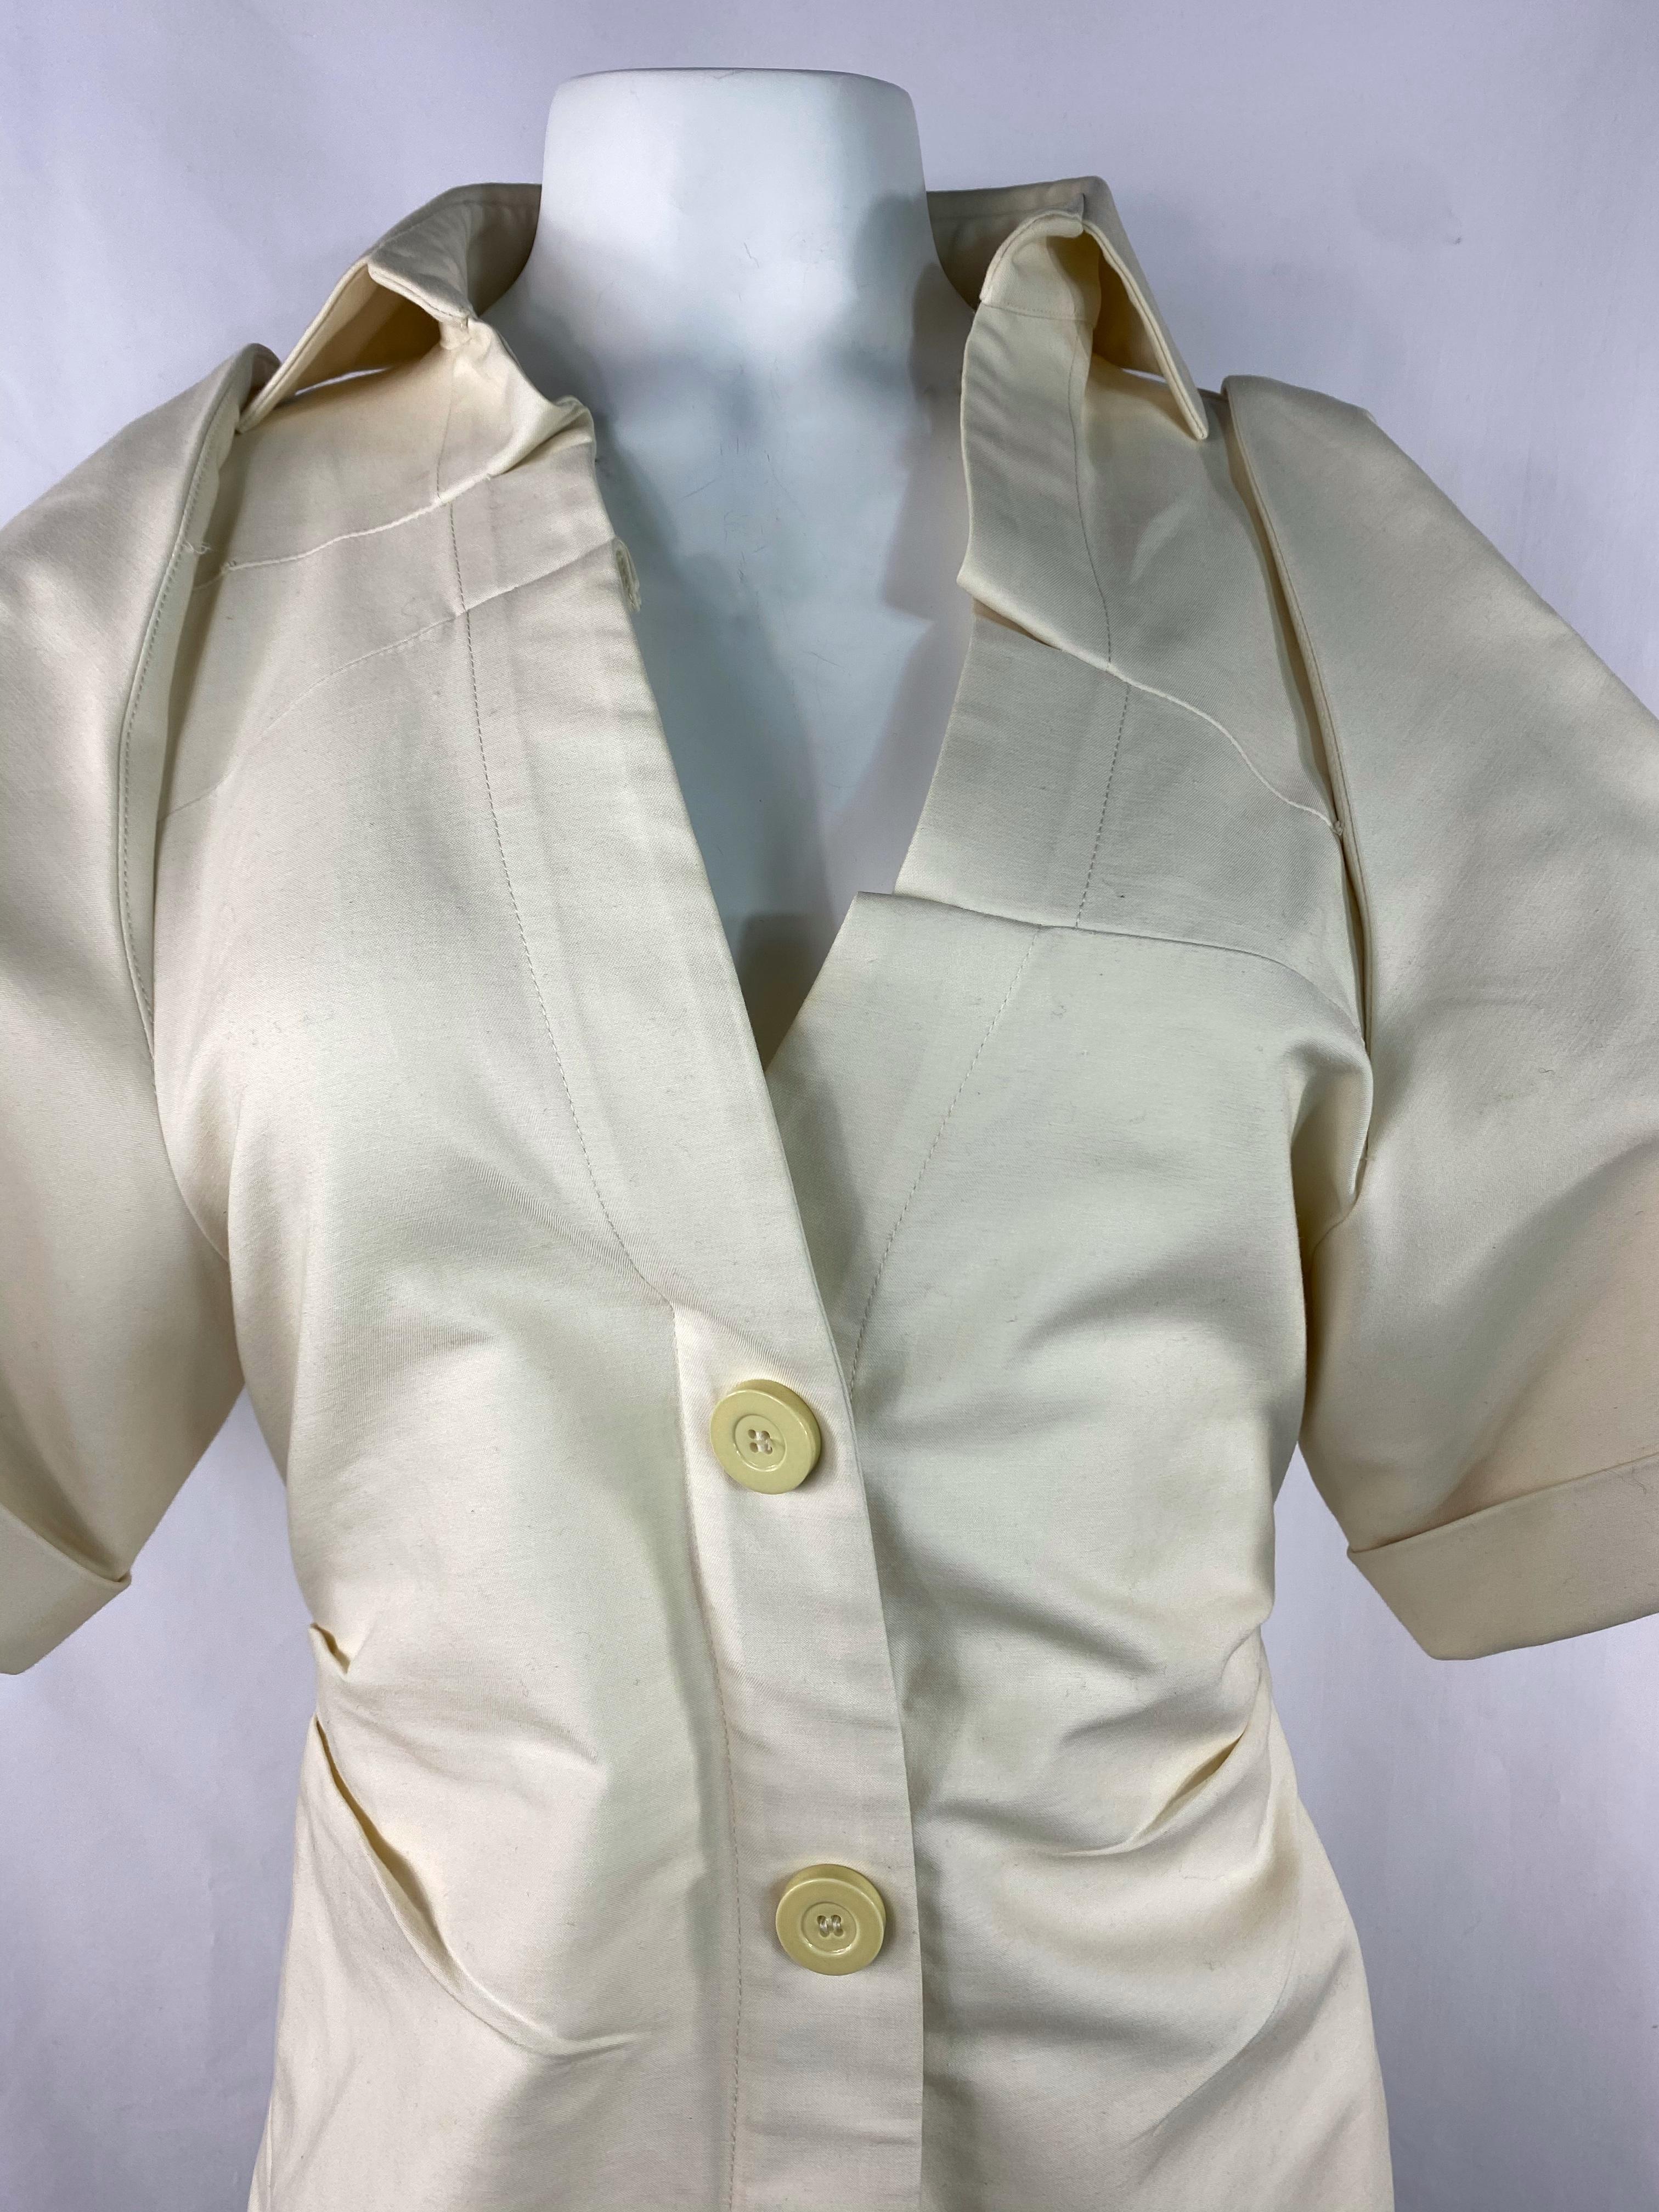 Détails du produit :

La chemise est conçue par Jacquemus, elle comporte deux fermetures à boutons sur le devant ainsi qu'une fermeture à glissière dissimulée à l'arrière, un col, une ligne de col en V et de larges manches courtes.